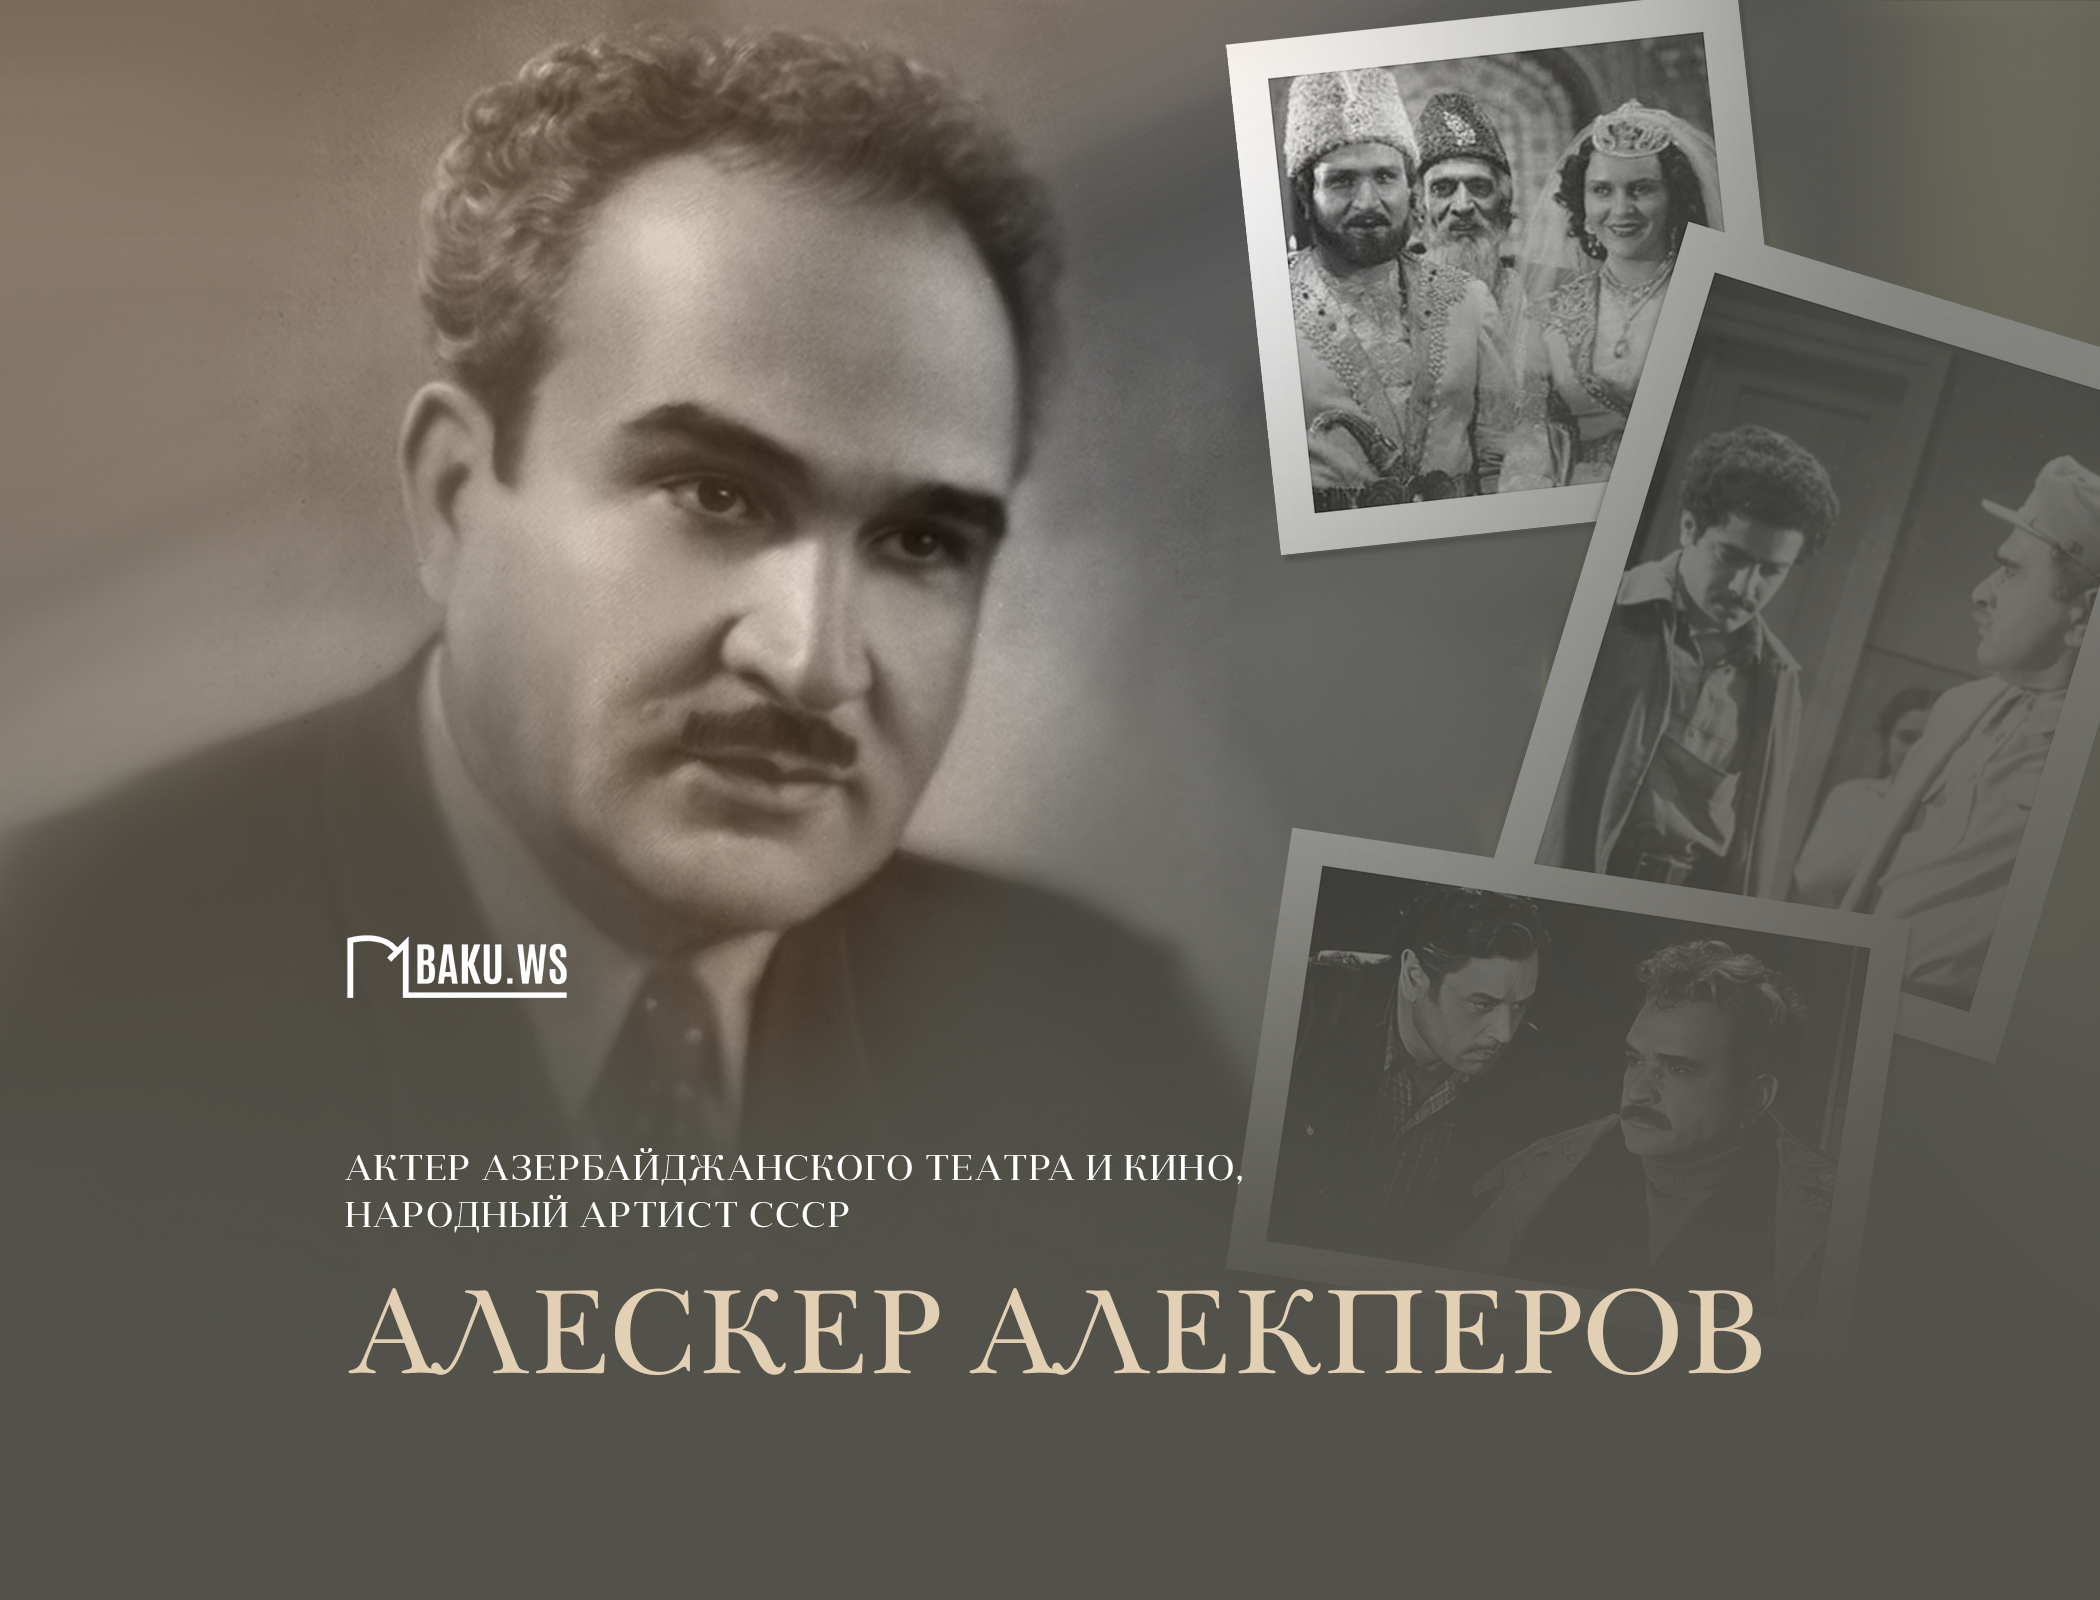 Сегодня день памяти народного артиста Алескера Алекперова